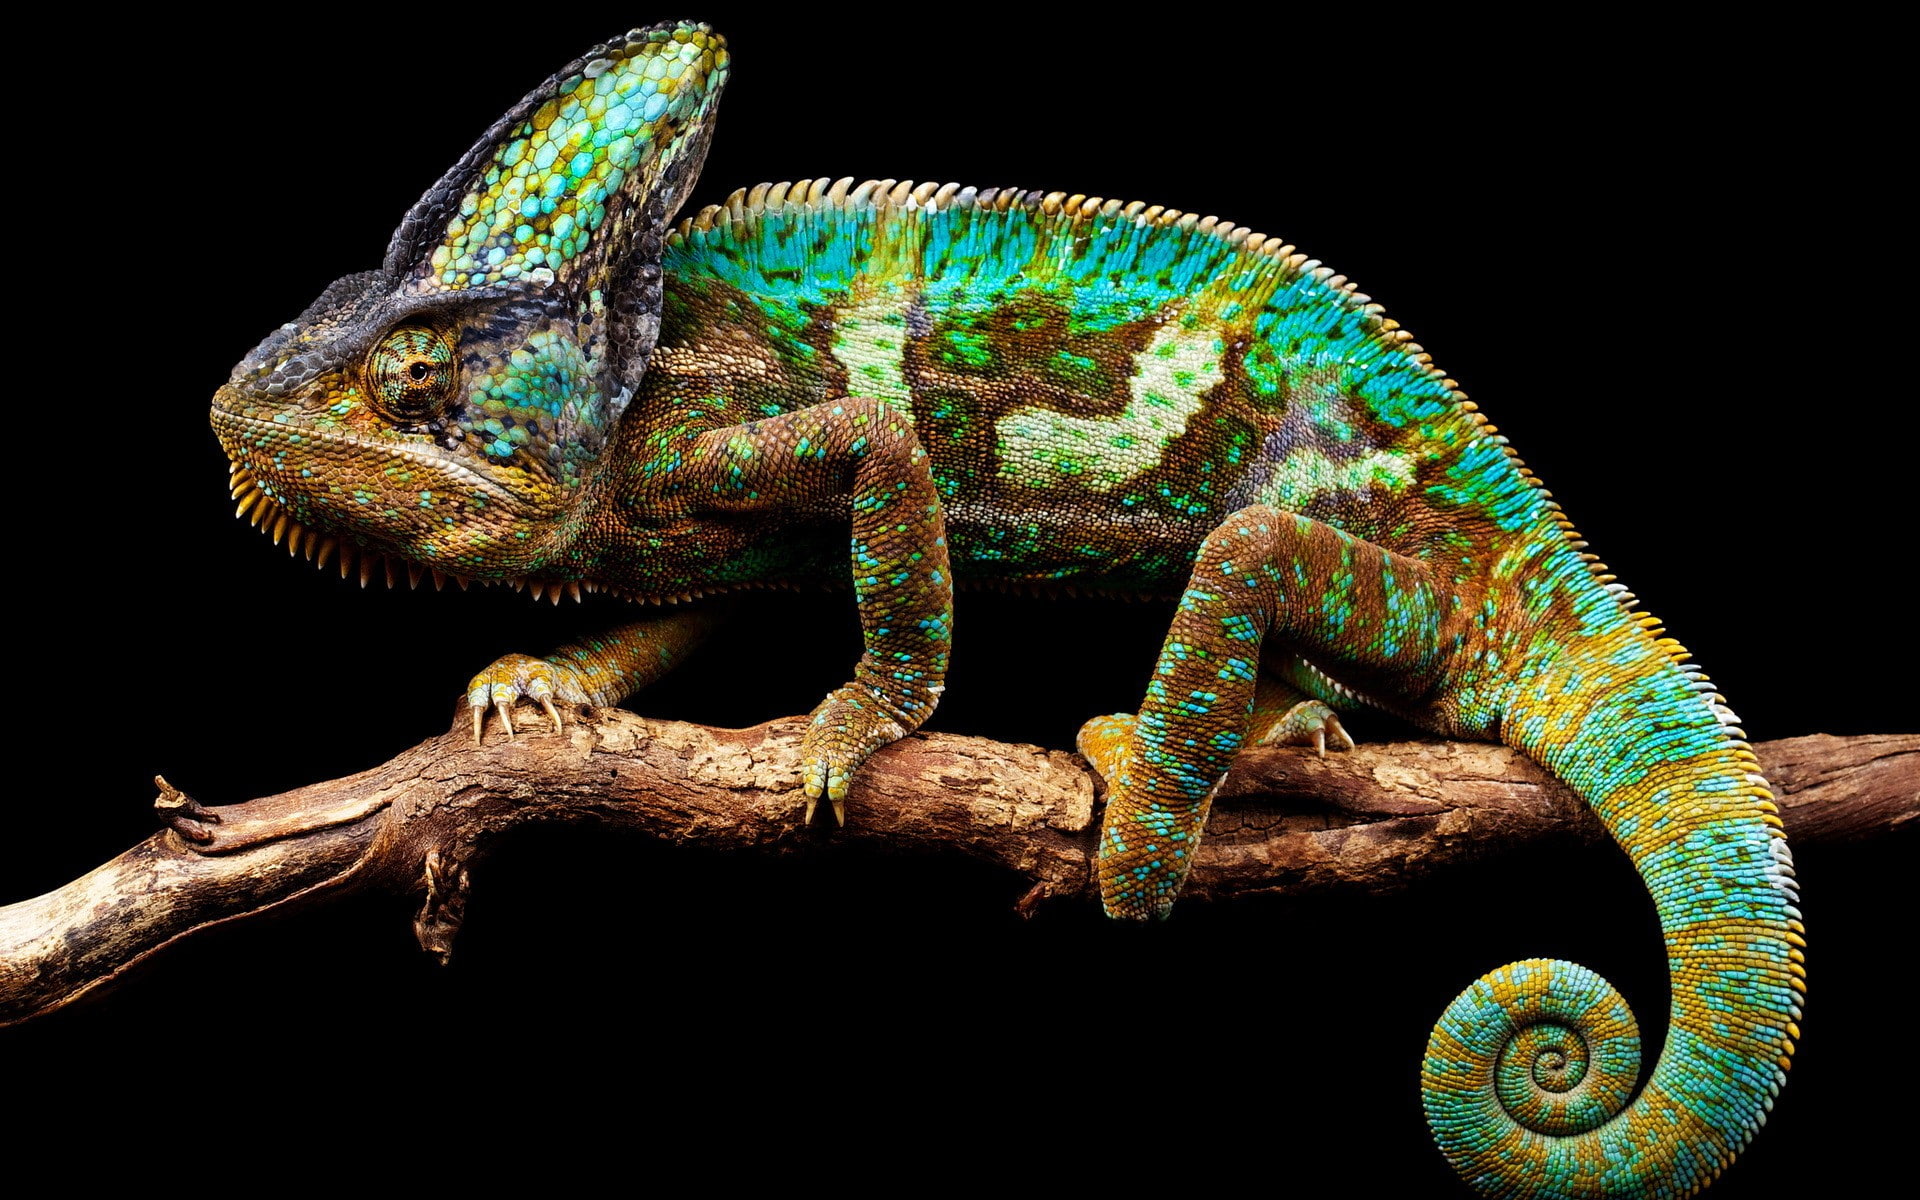 Chameleon background, chameleon nature